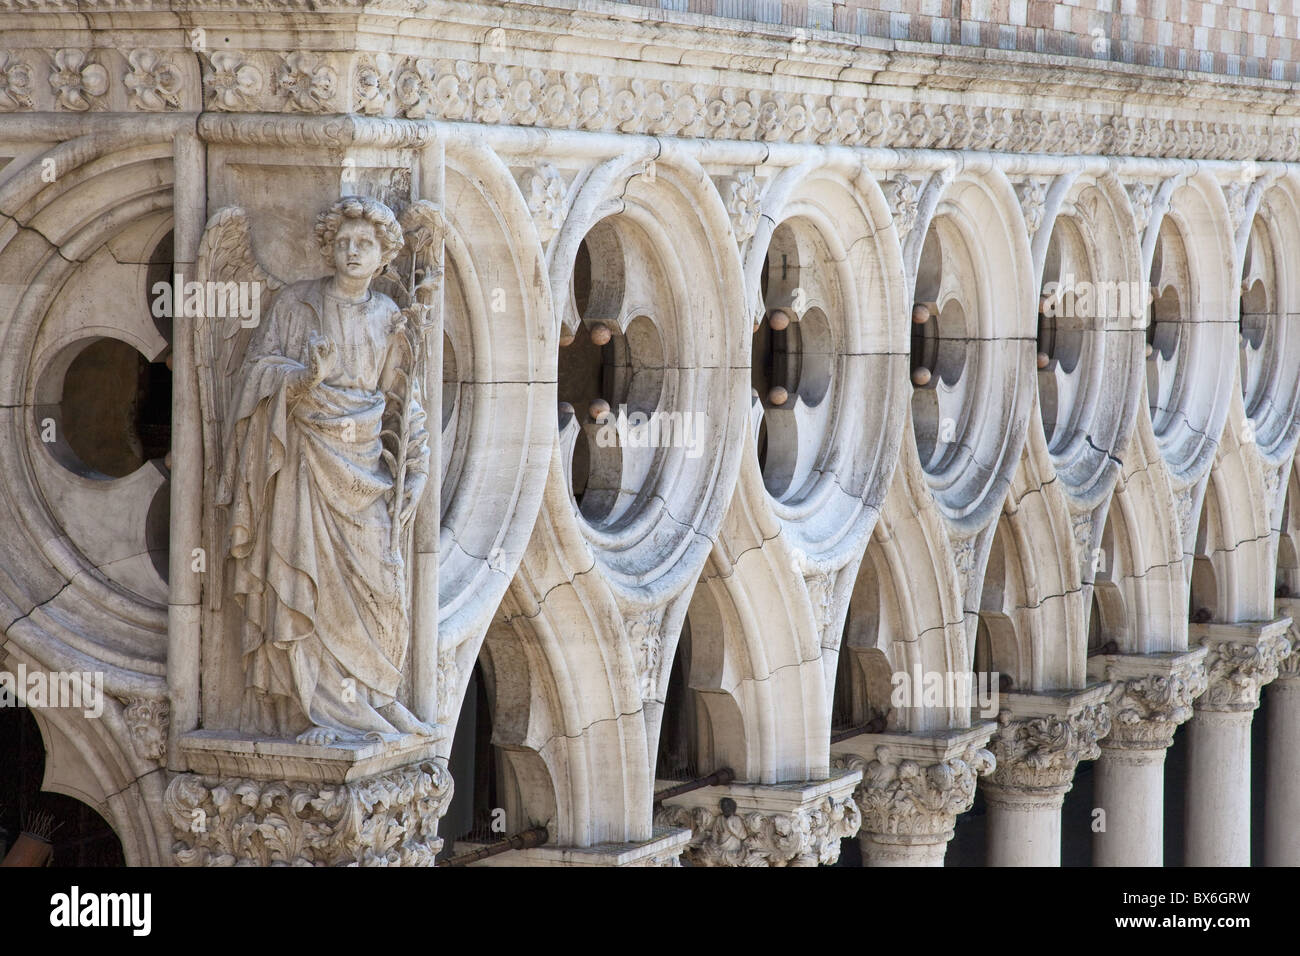 Äußere Details des Schnitzens eines Engels im 15. Jahrhundert Palazzo Ducale, Piazza San Marco, UNESCO World Heritage Site, Italien Stockfoto